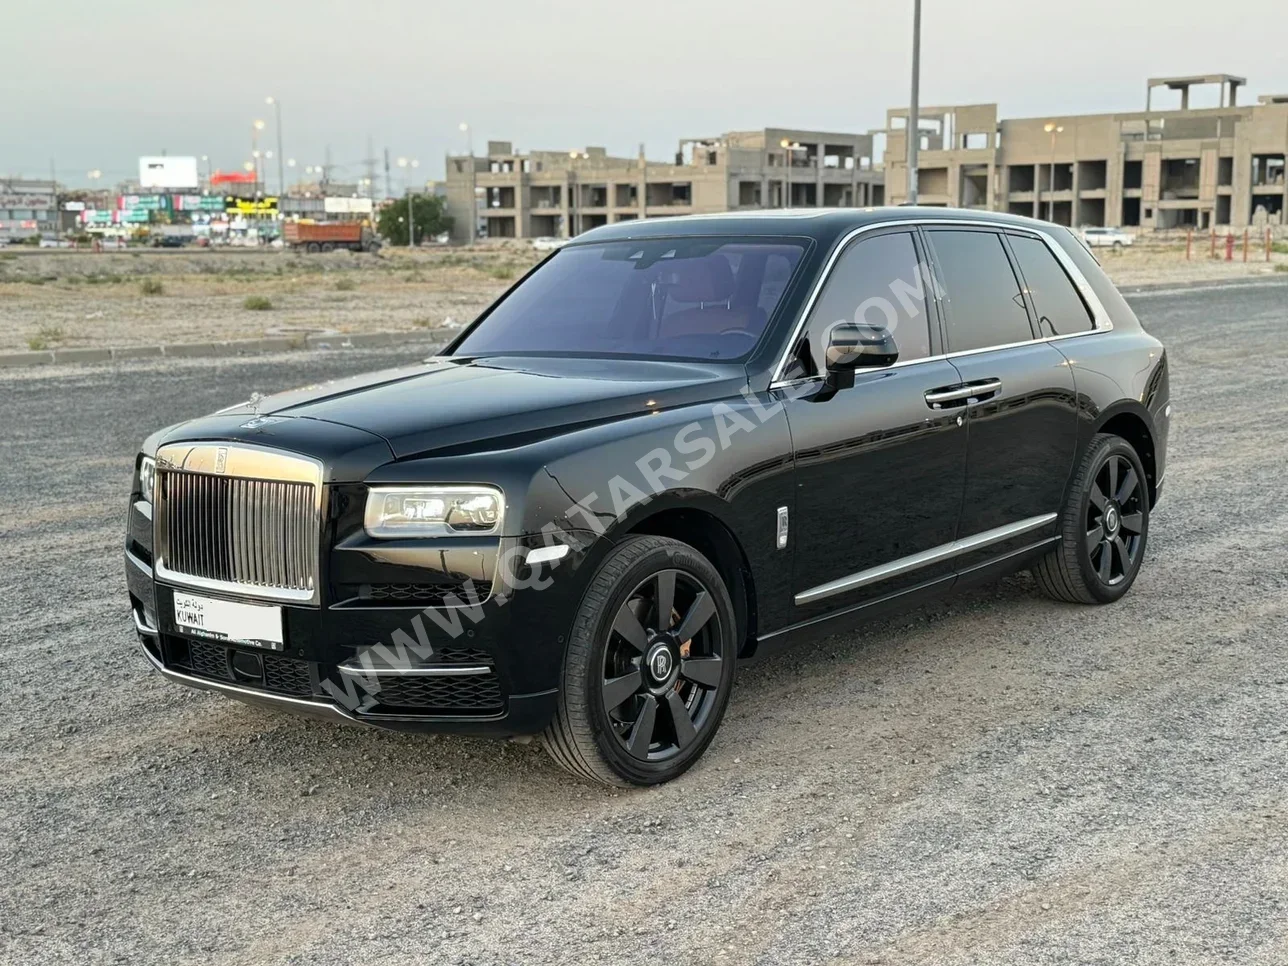 Rolls-Royce  Cullinan  2019  Automatic  50,000 Km  12 Cylinder  Four Wheel Drive (4WD)  SUV  Black